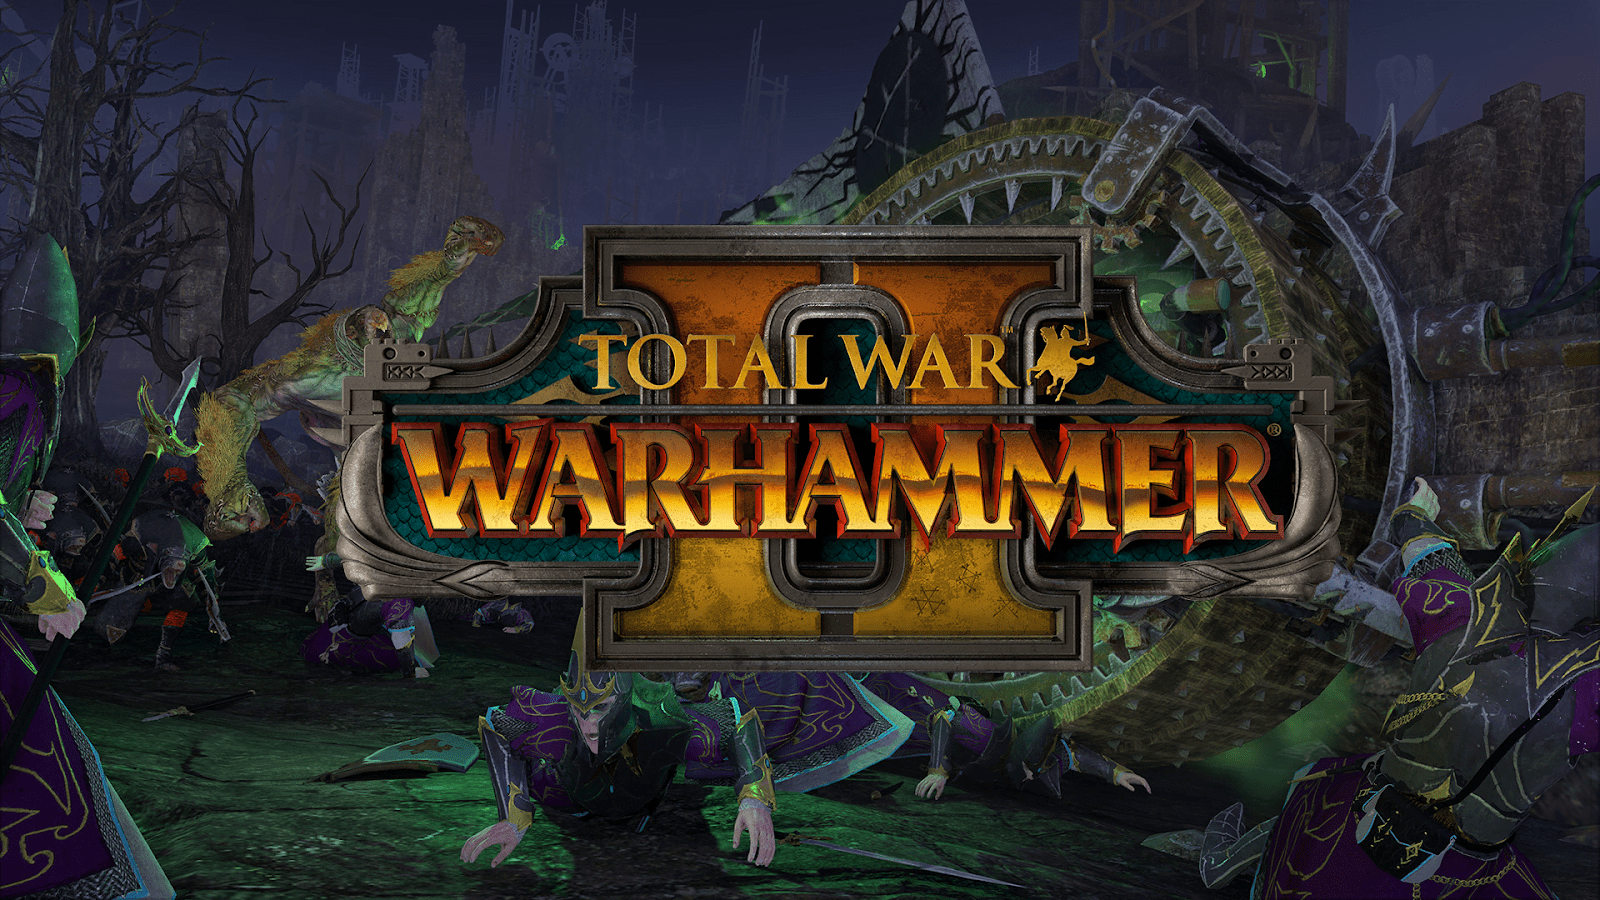 Total War Warhammer 2 PS3 Full Version Free Download